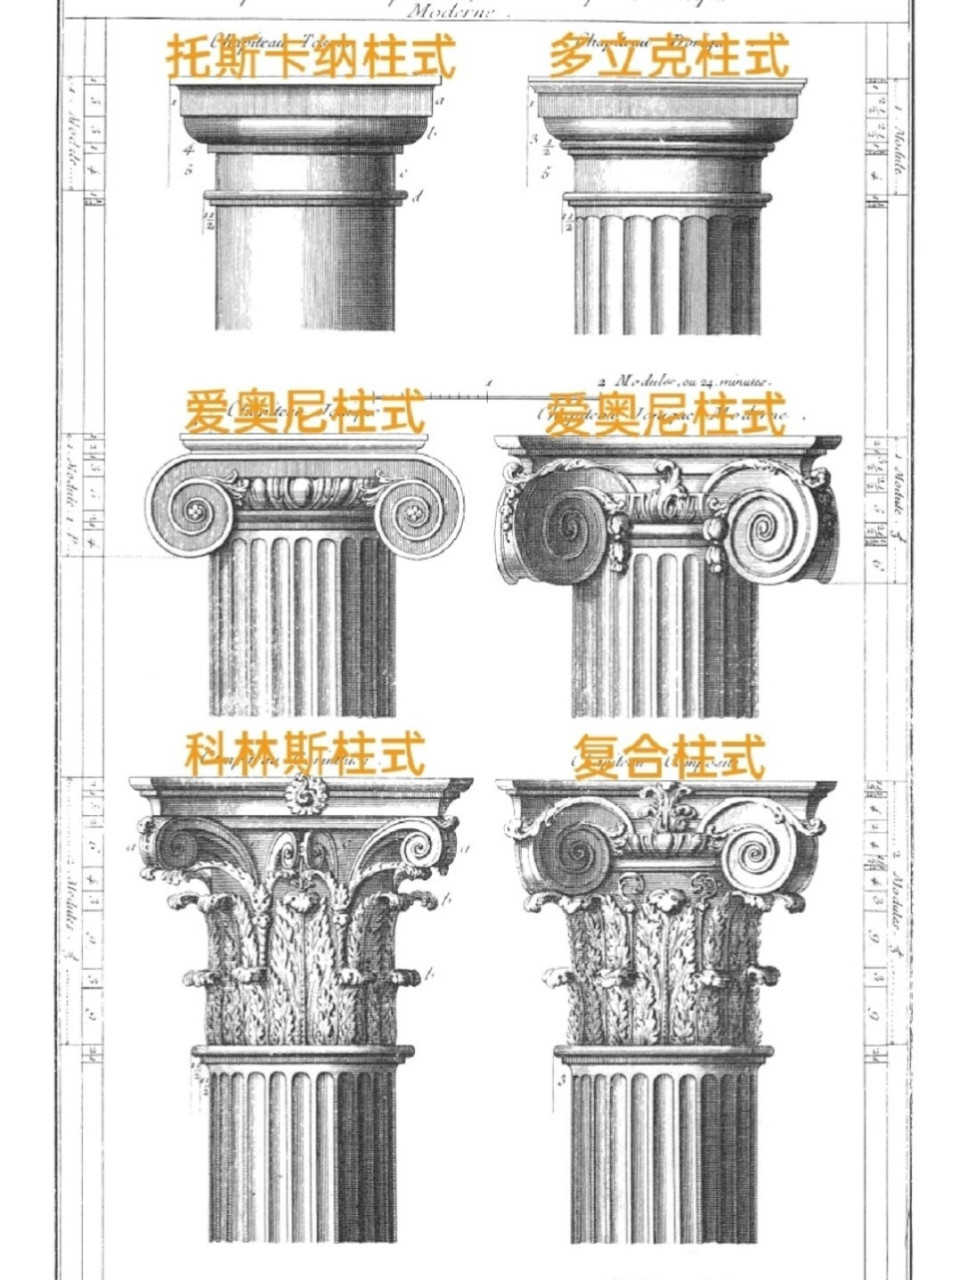 多立克柱式柱头图片